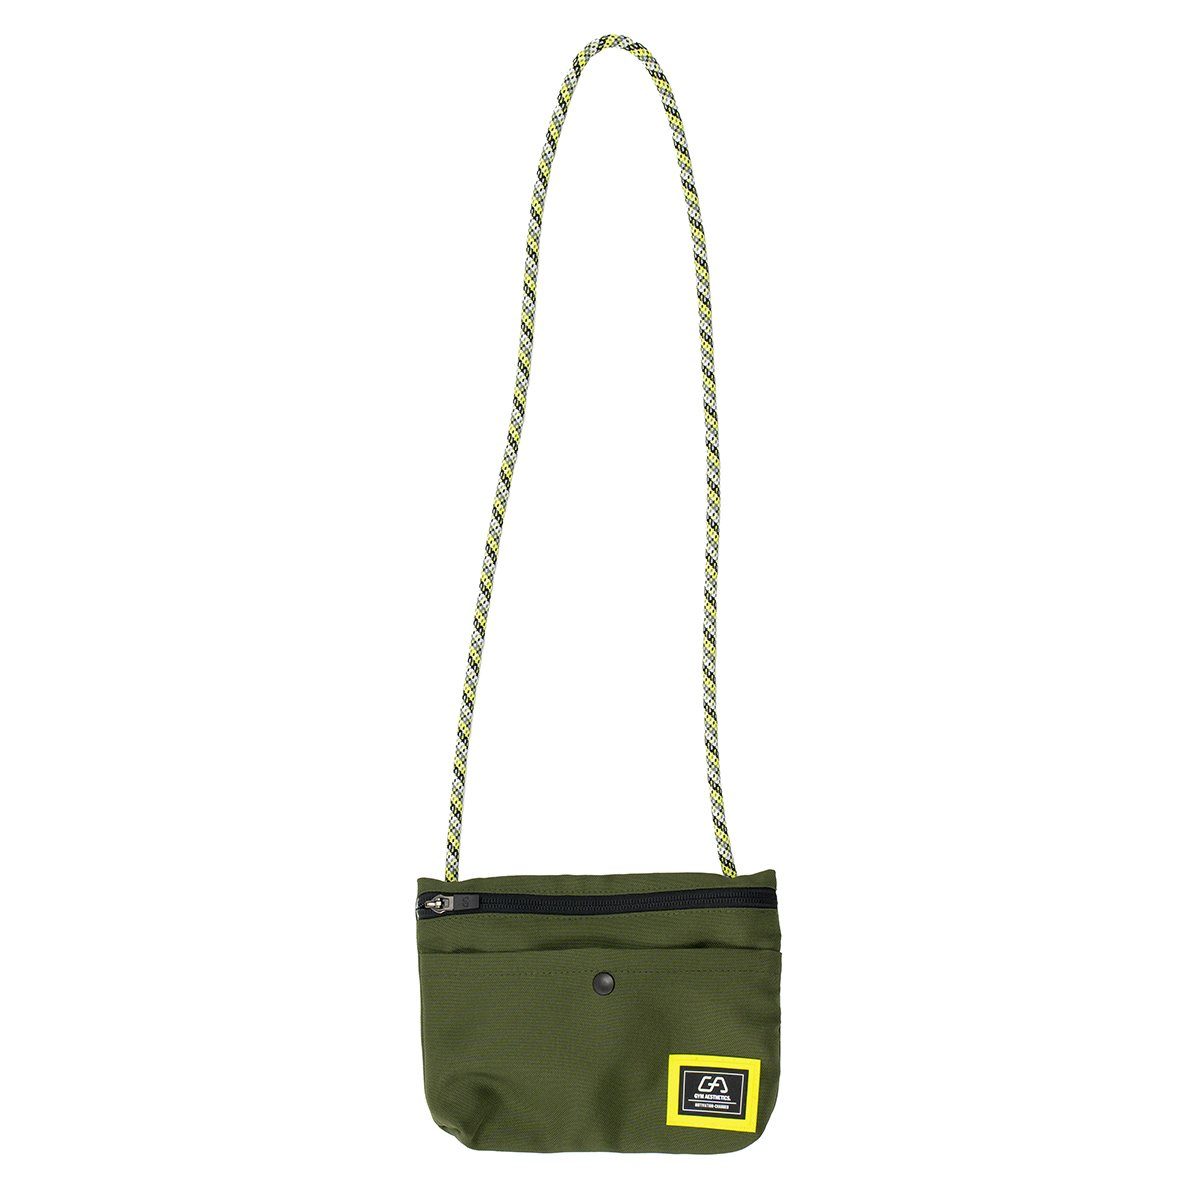 Olive GYM Trendy City Functional Stylische Citytasche Bag, Umhängetasche AESTHETICS